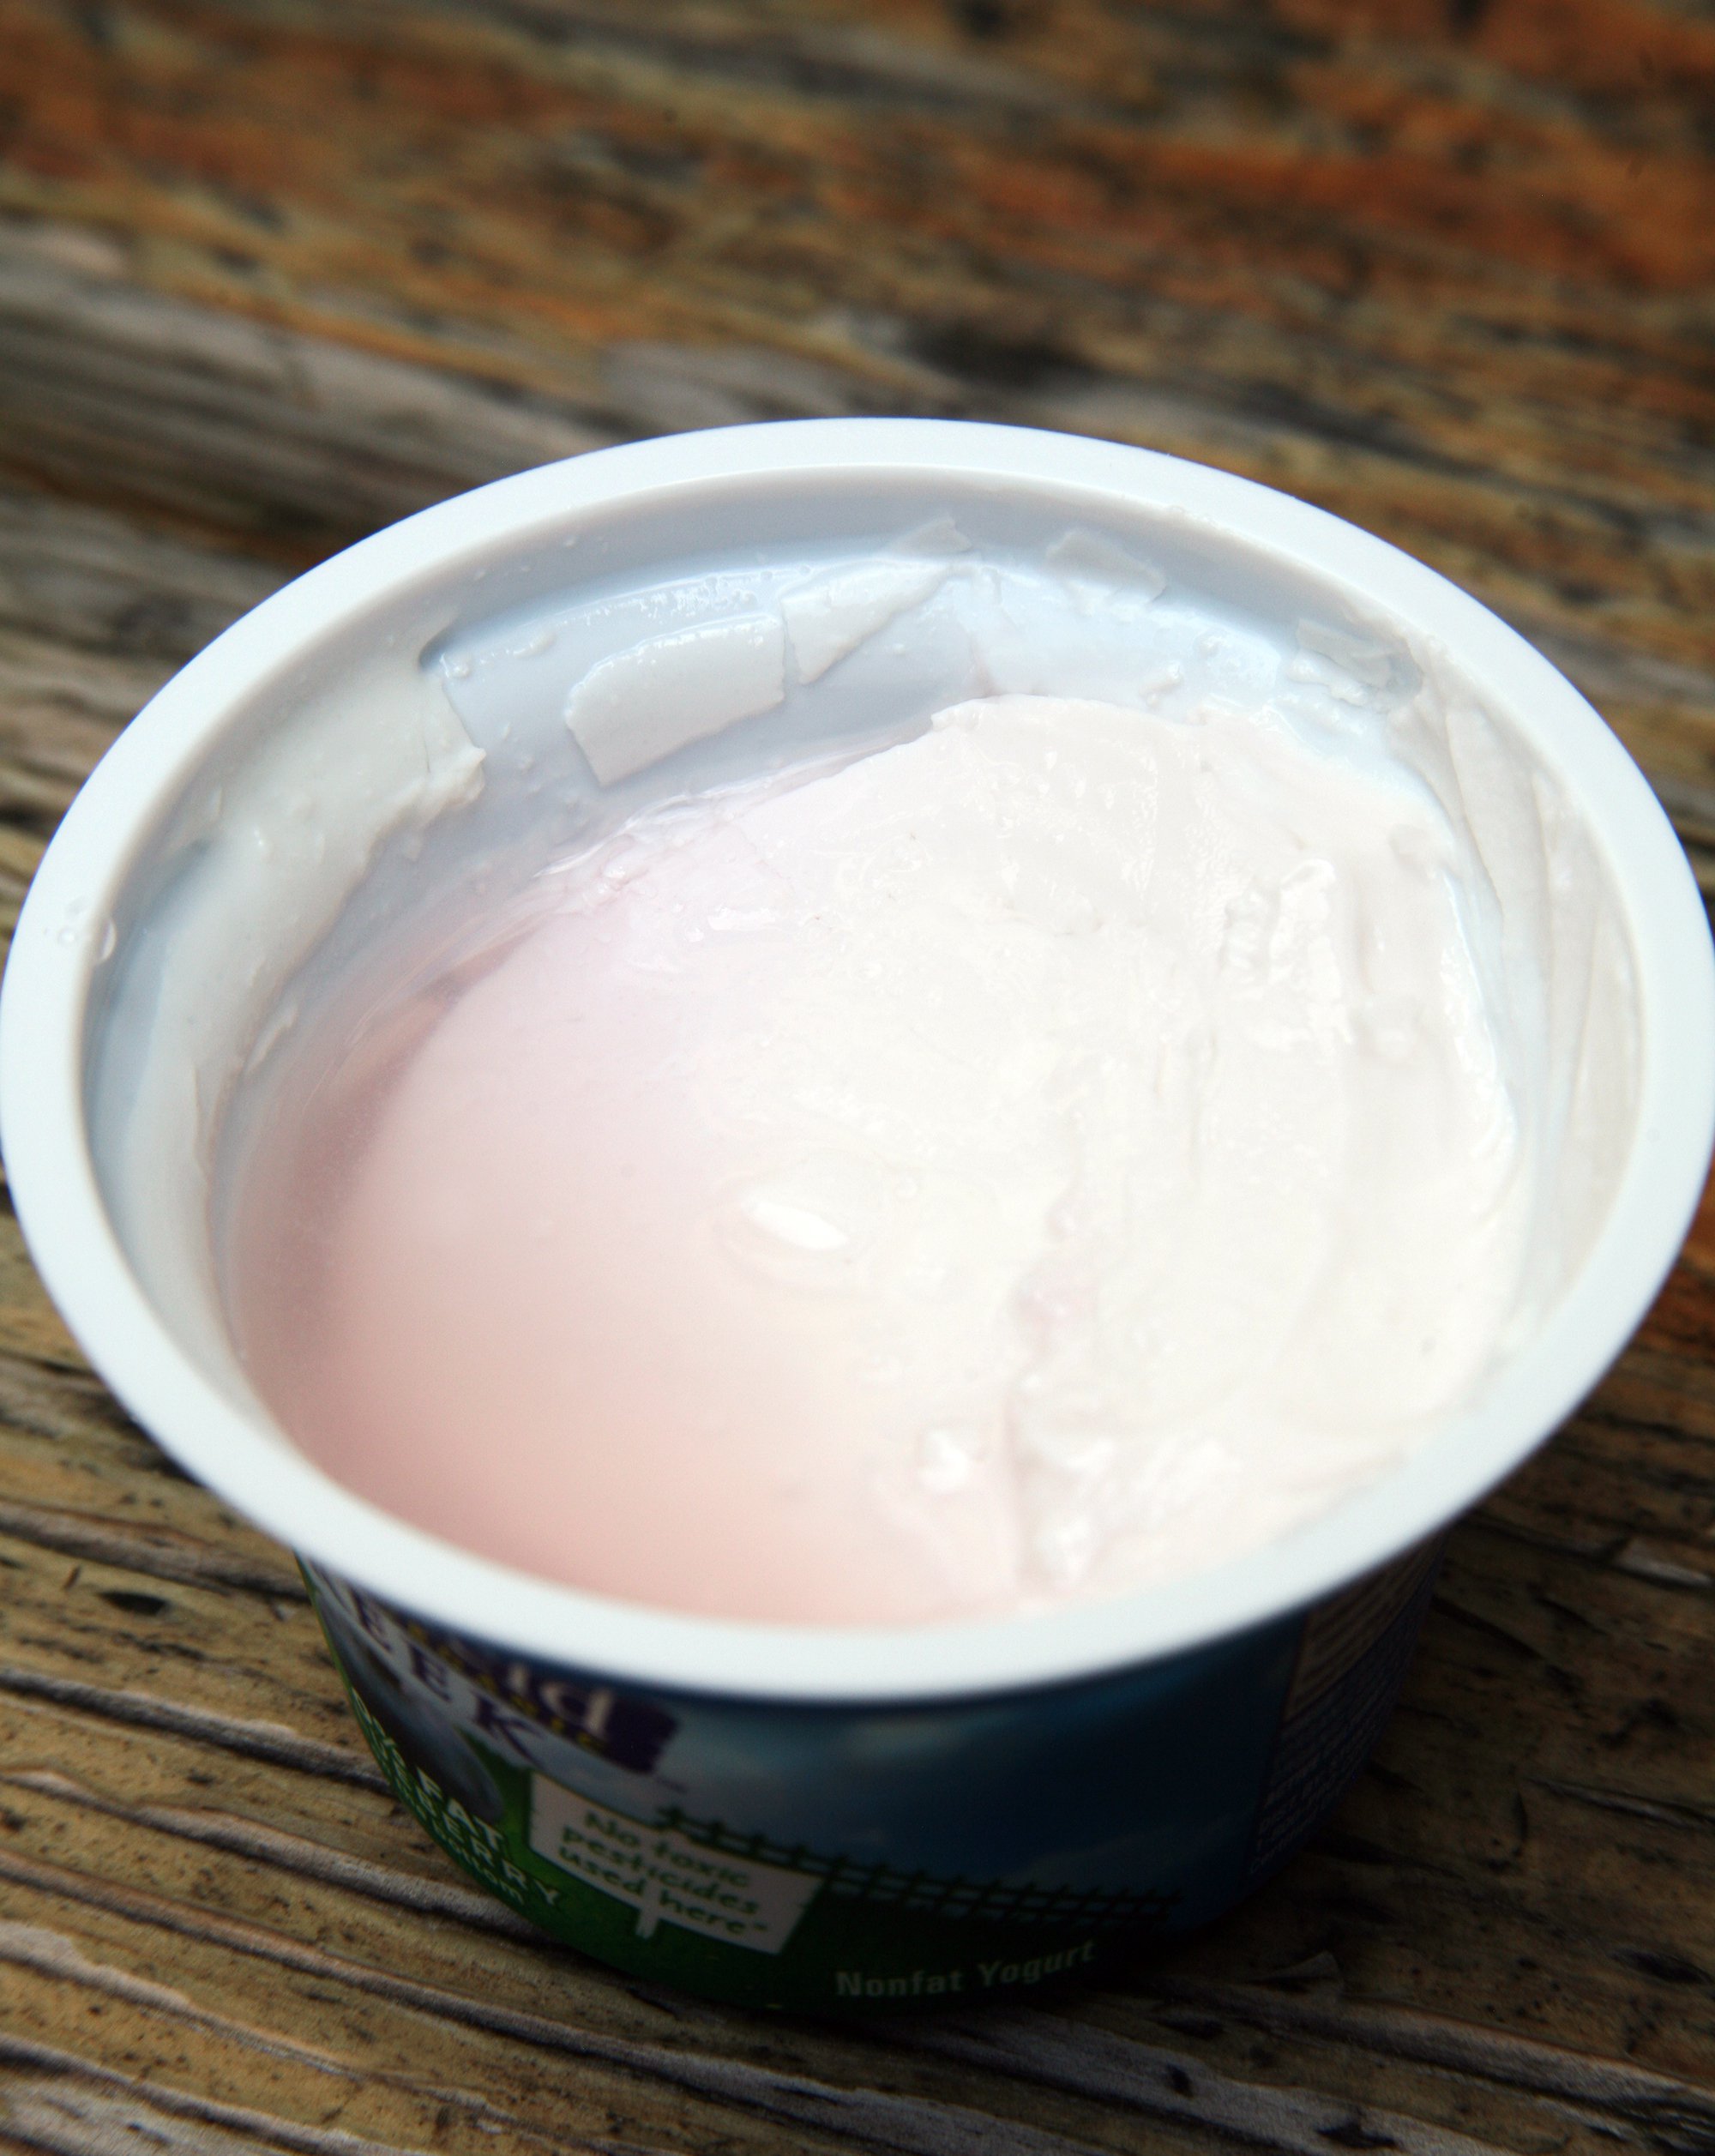 Mit csinálj a joghurt tetején képződő folyadékkal?